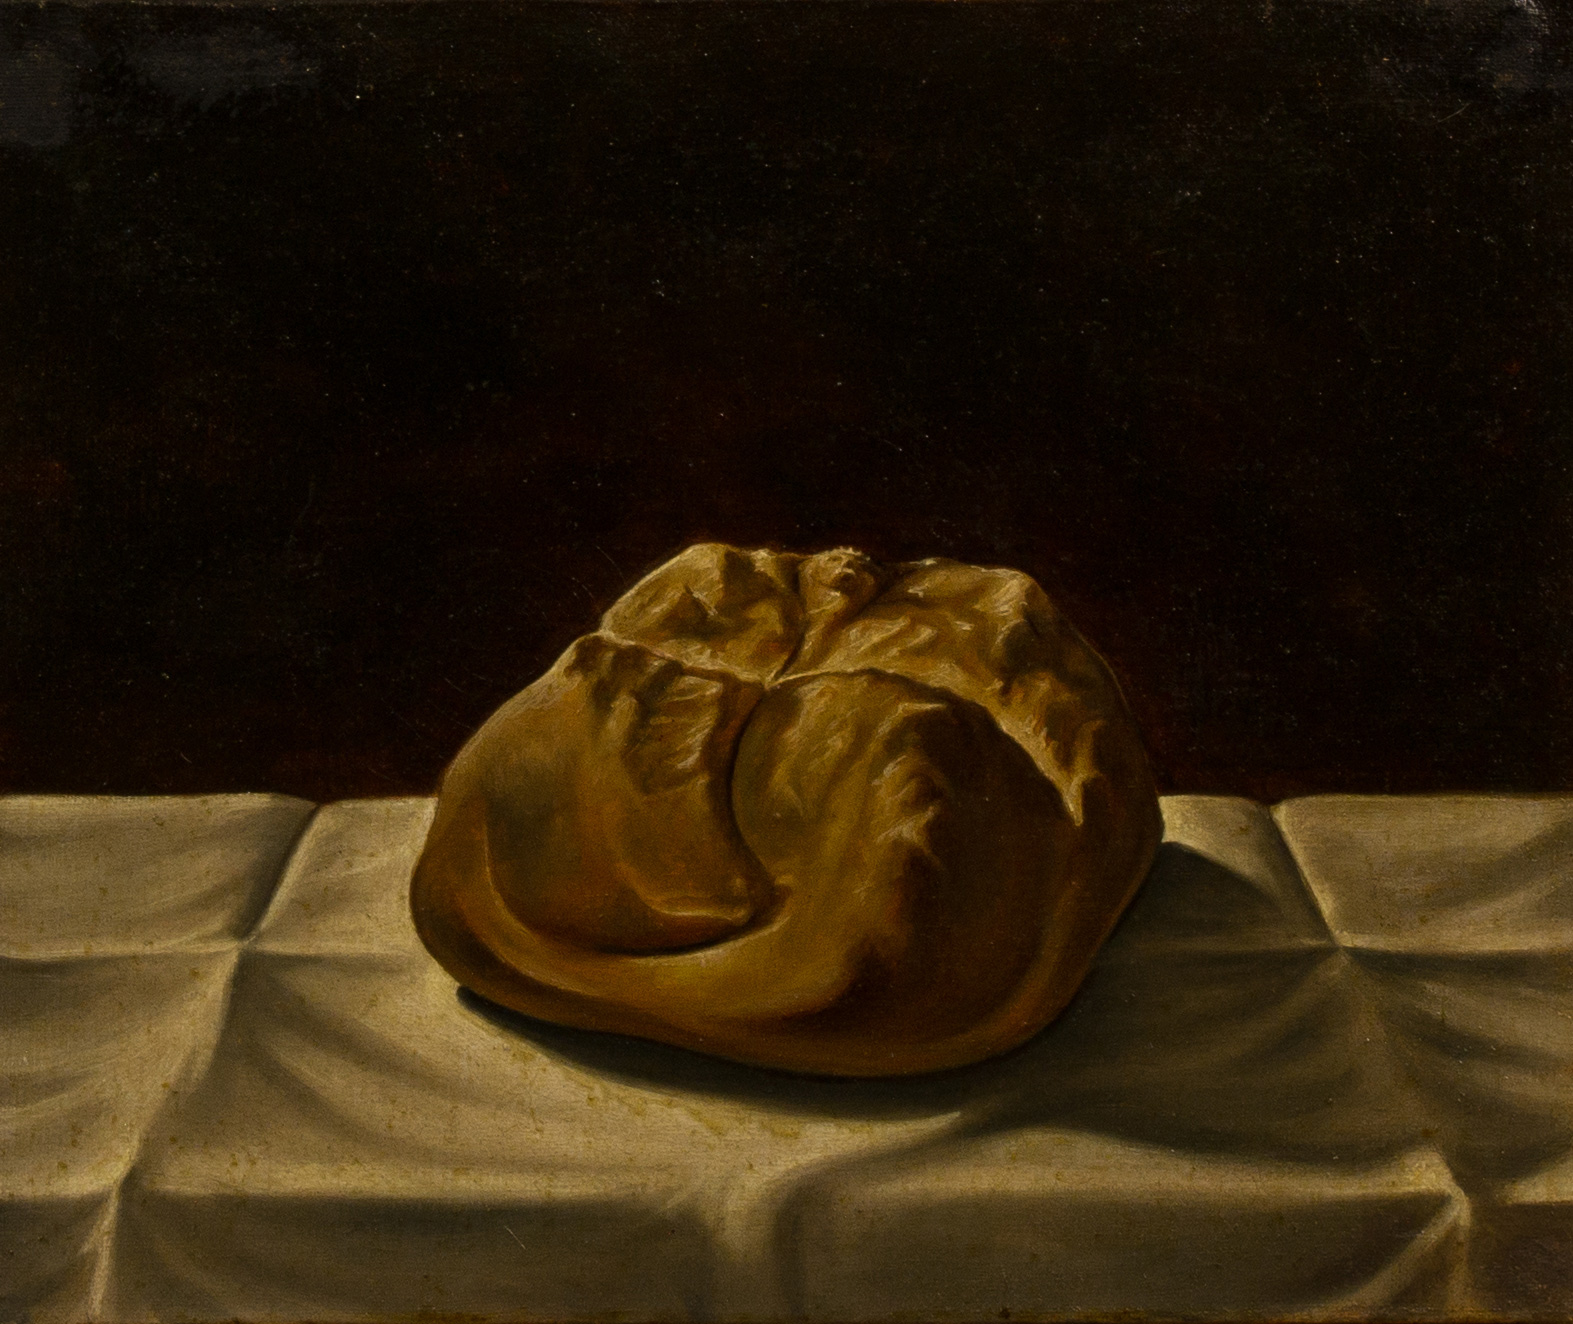   Pane mistico , olio su tela, cm 25x30, 1991 